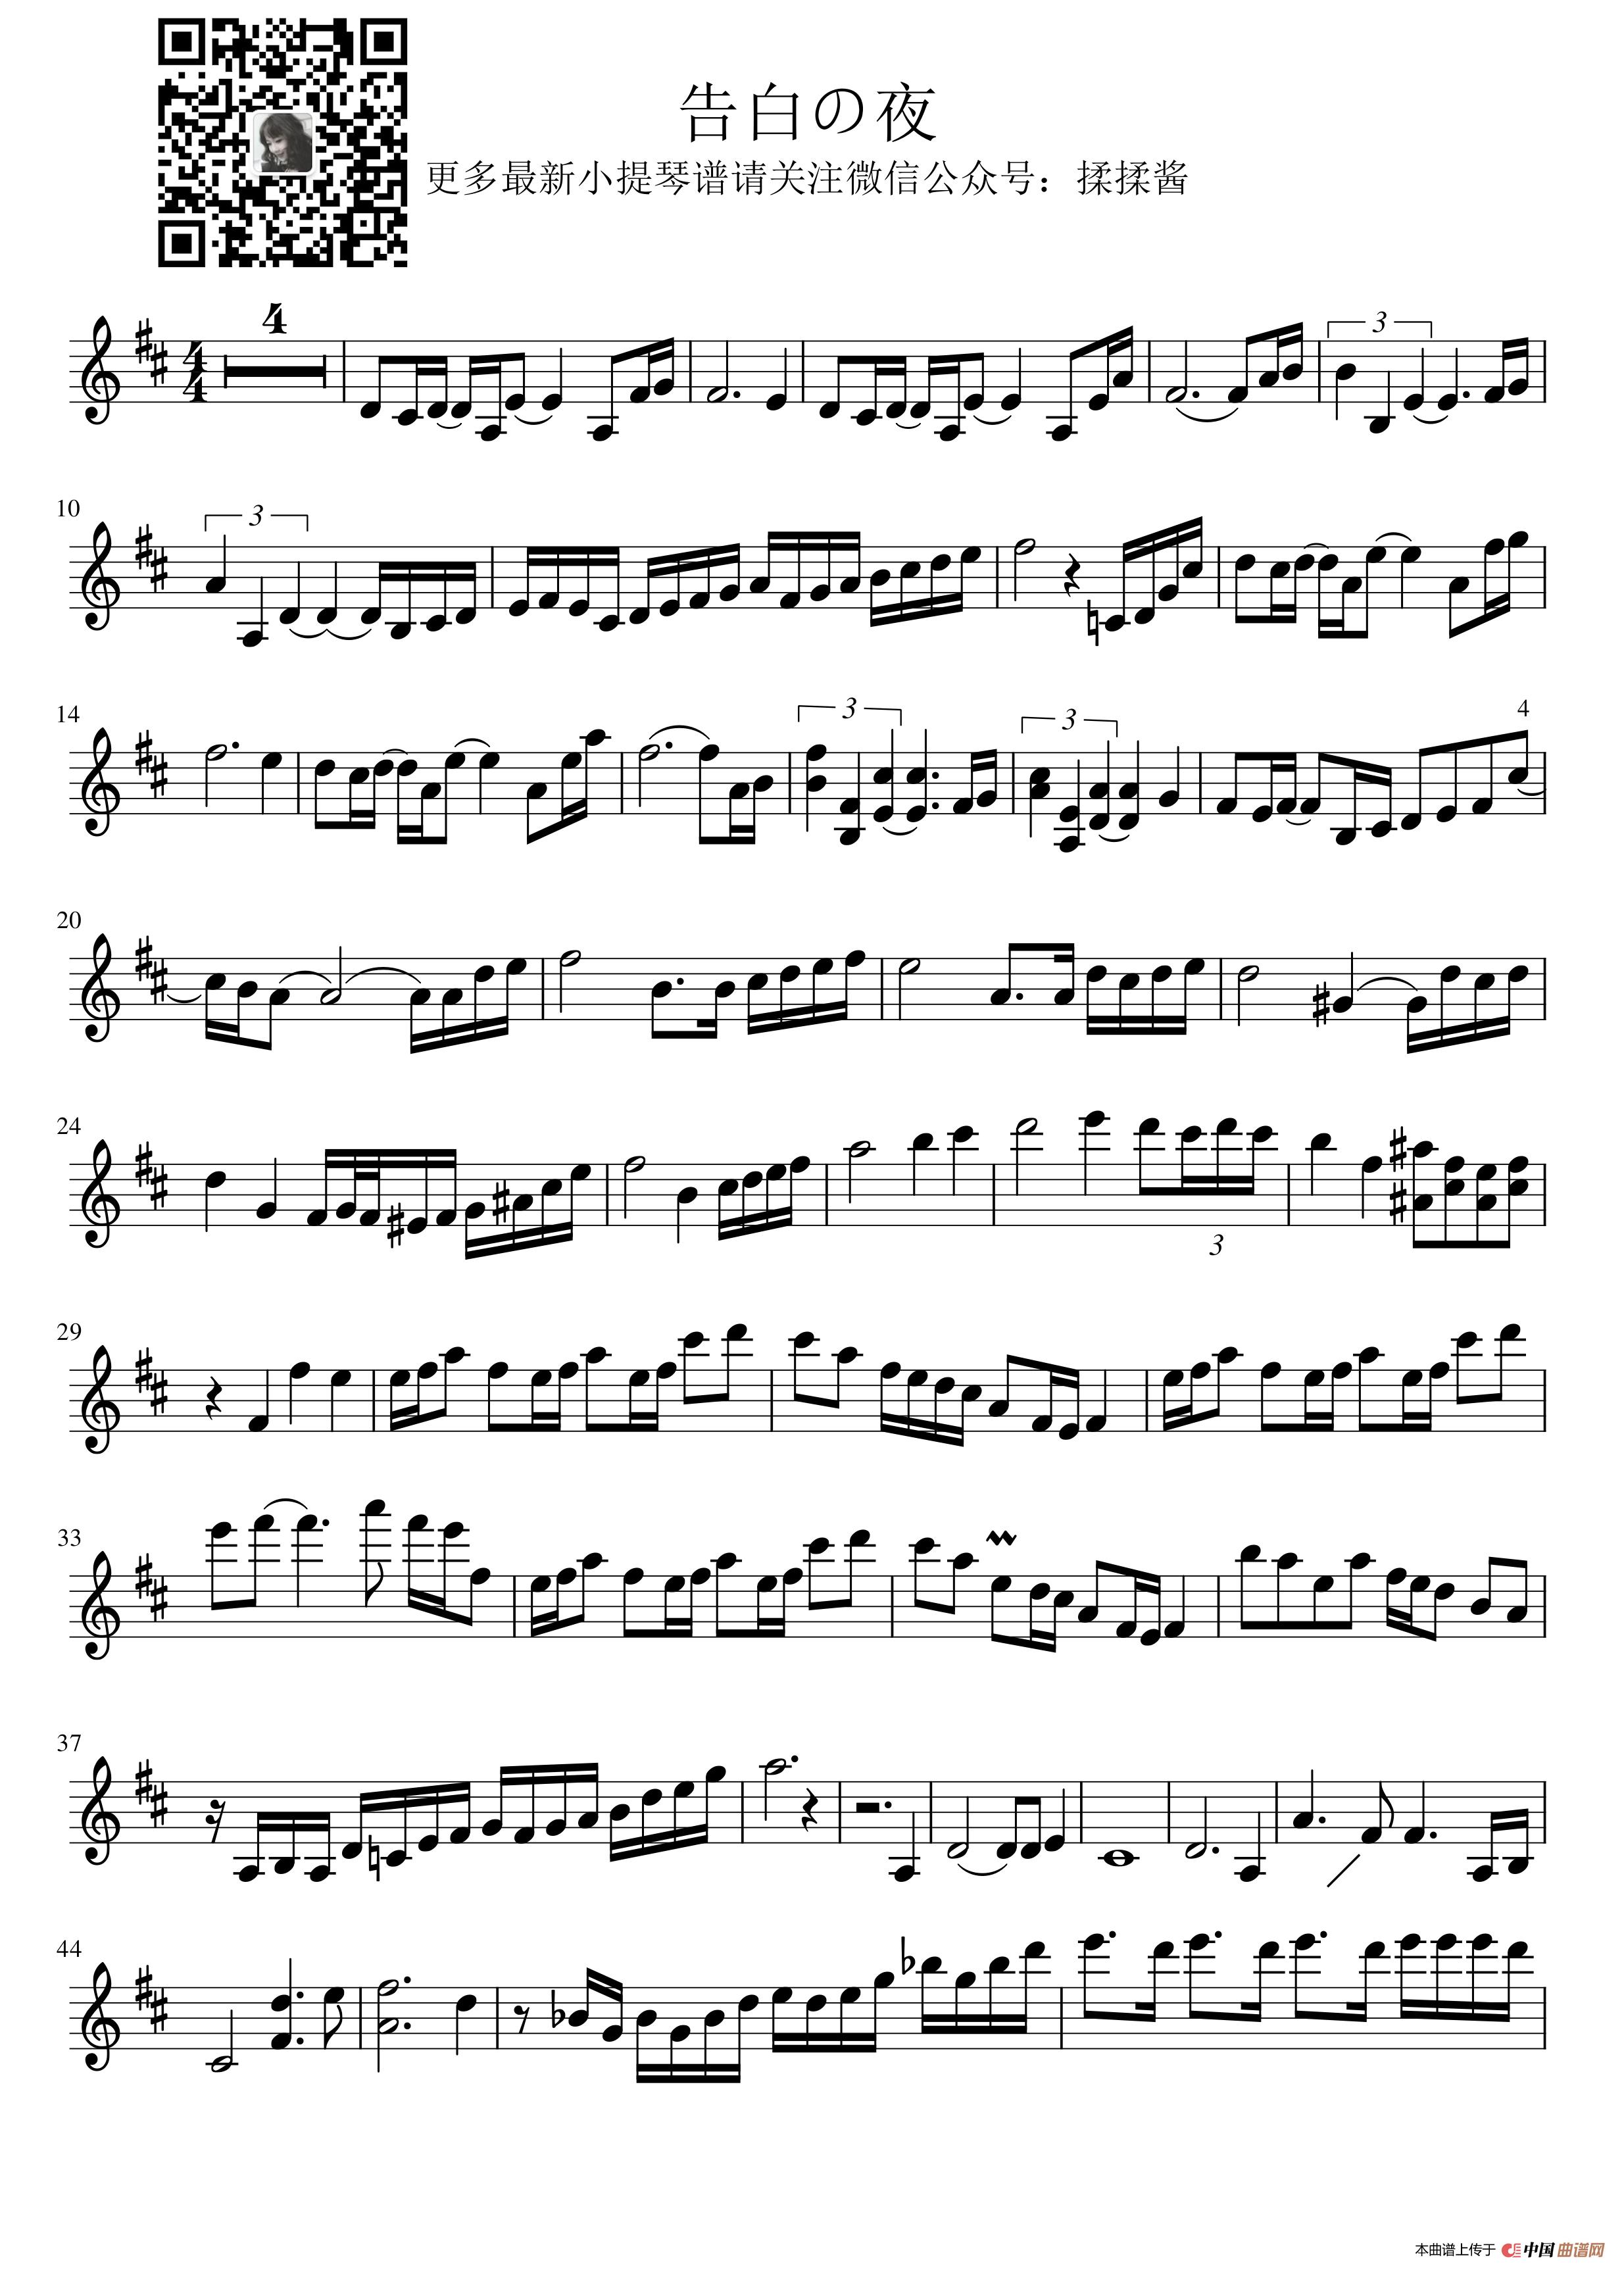 告白的夜小提琴谱 告白之夜小提琴谱（告白の夜 小提琴谱）(1)_原文件名：告白000.jpg